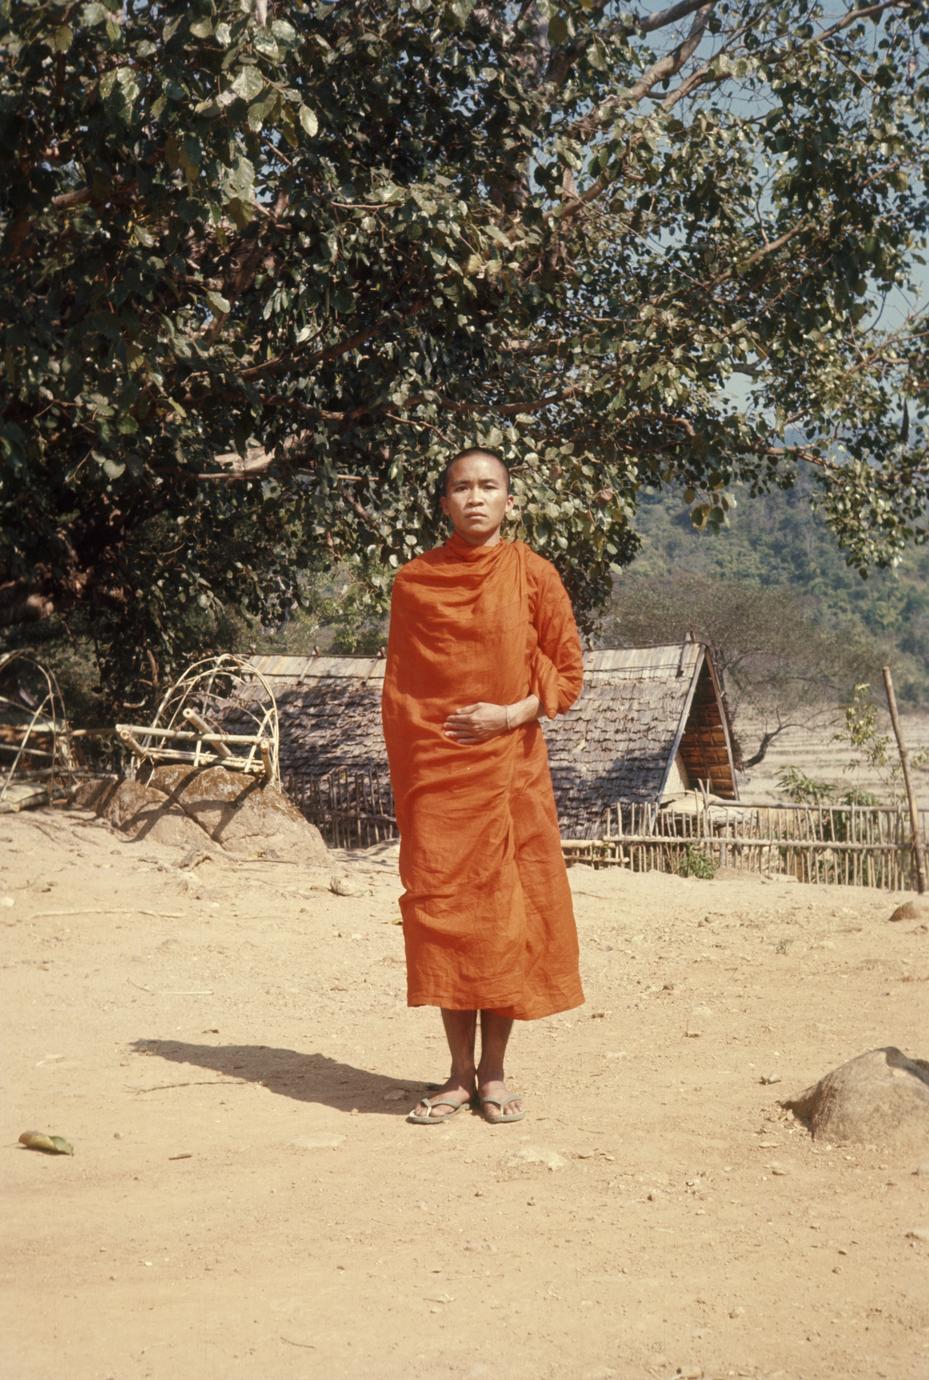 Buddhist monk